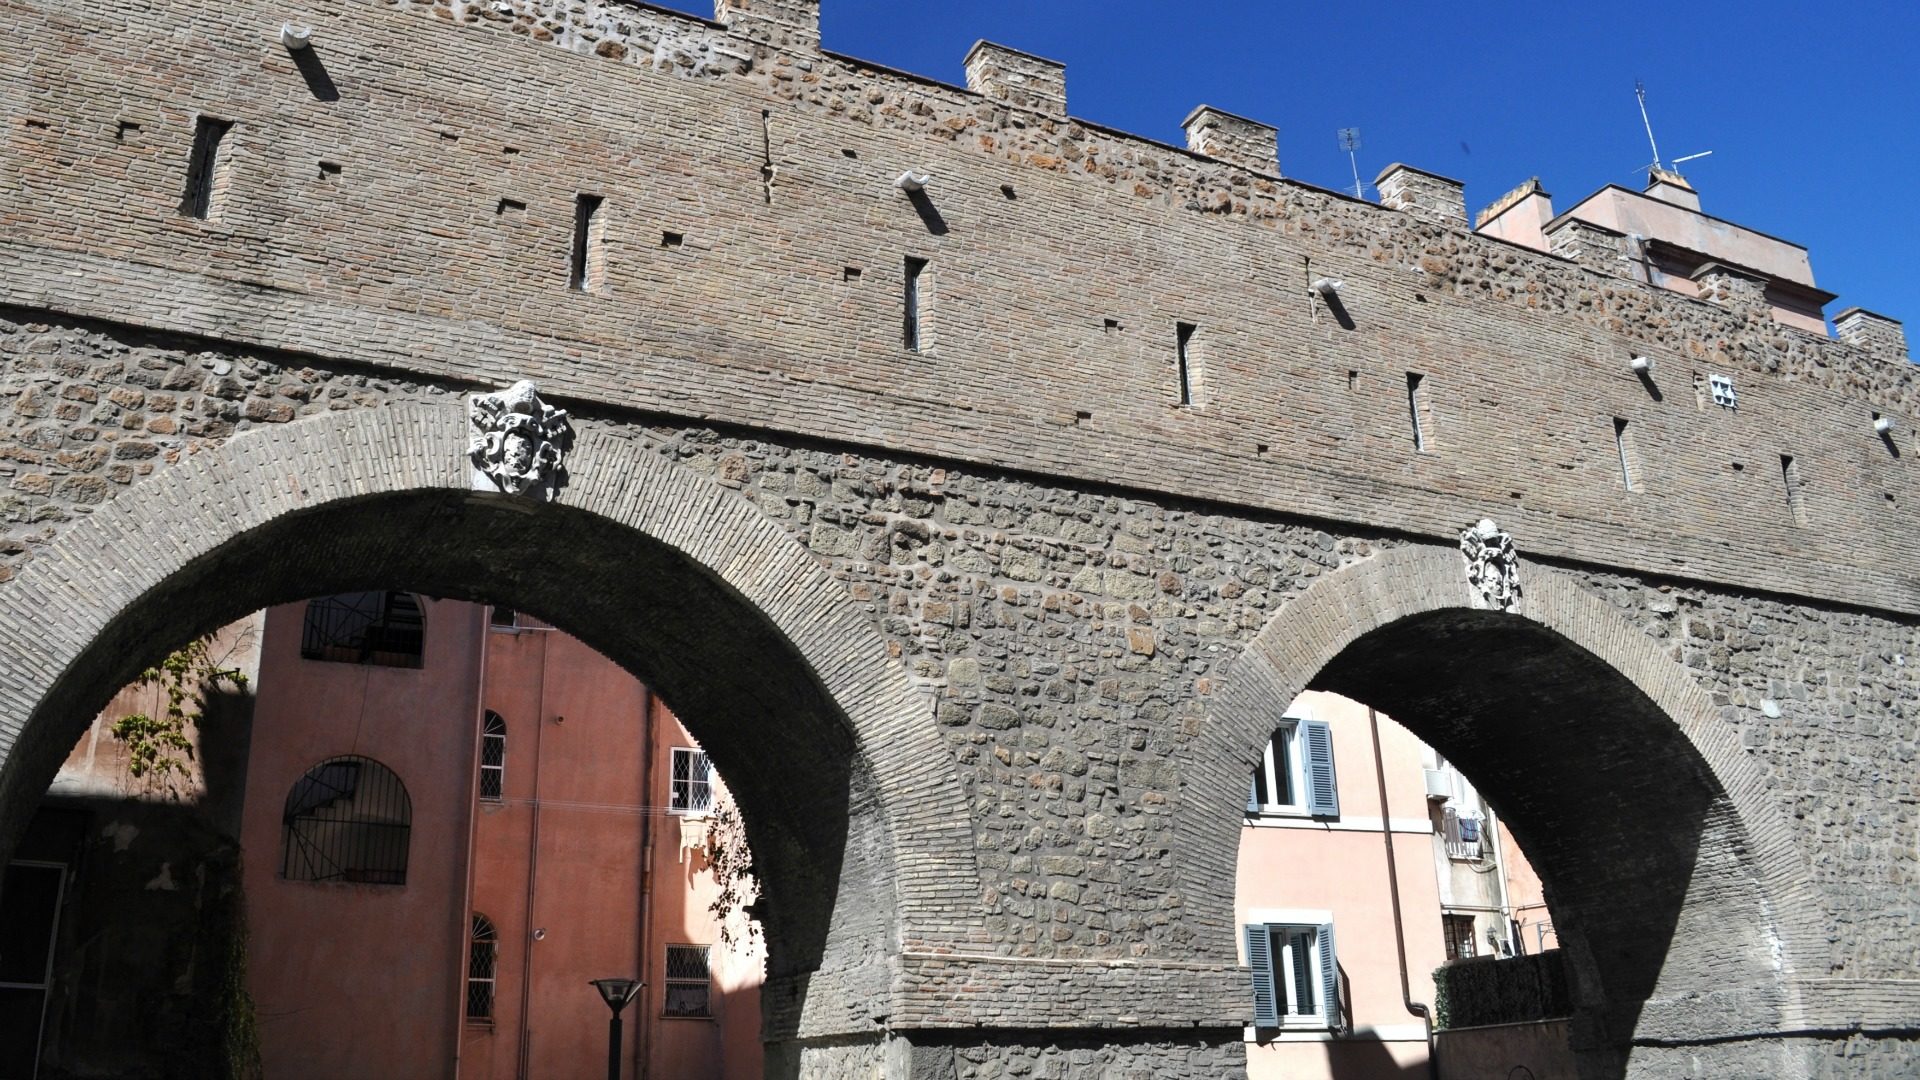 Passetto di Borgo, le passage secret des papes. (Photo: Flickr/David McKelvey/CC BY-NC-ND 2.0)